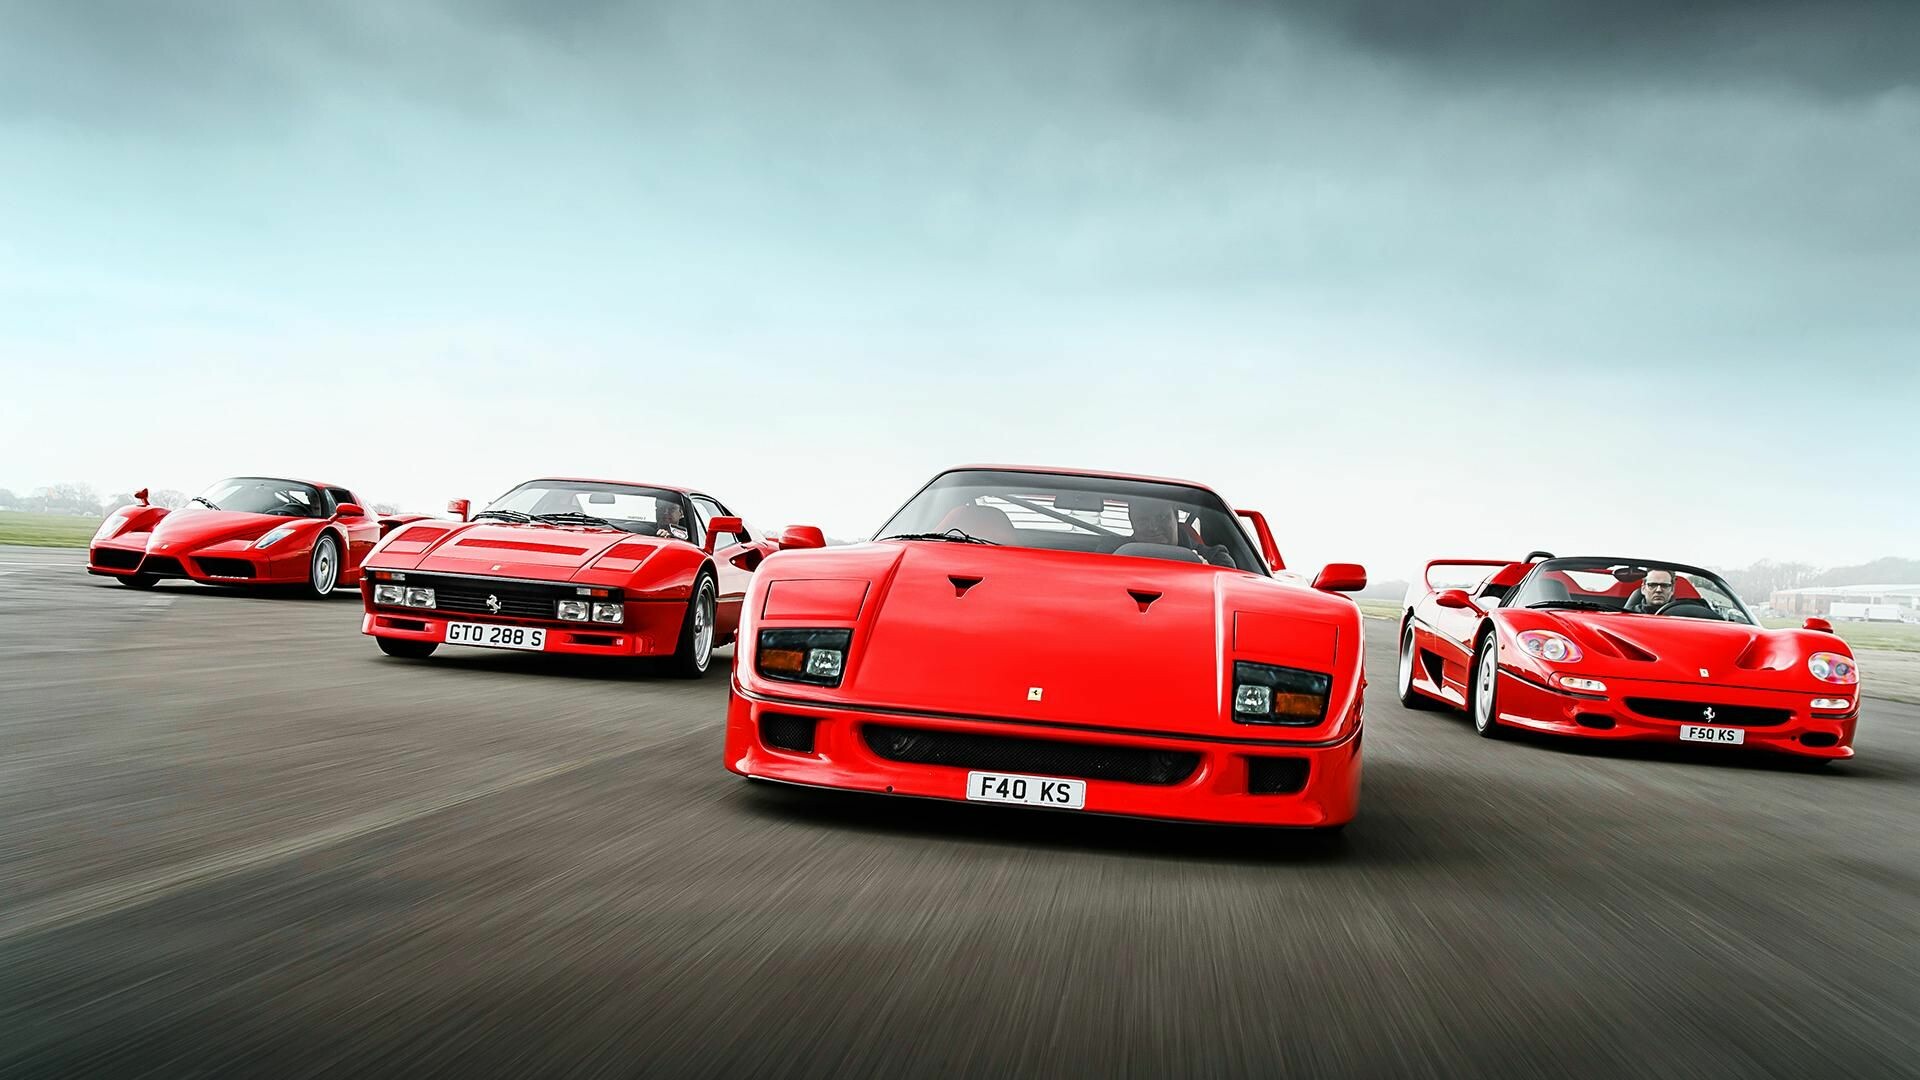 Ferrari images 1080P, 2K, 4K, 5K HD wallpapers free download | Wallpaper  Flare